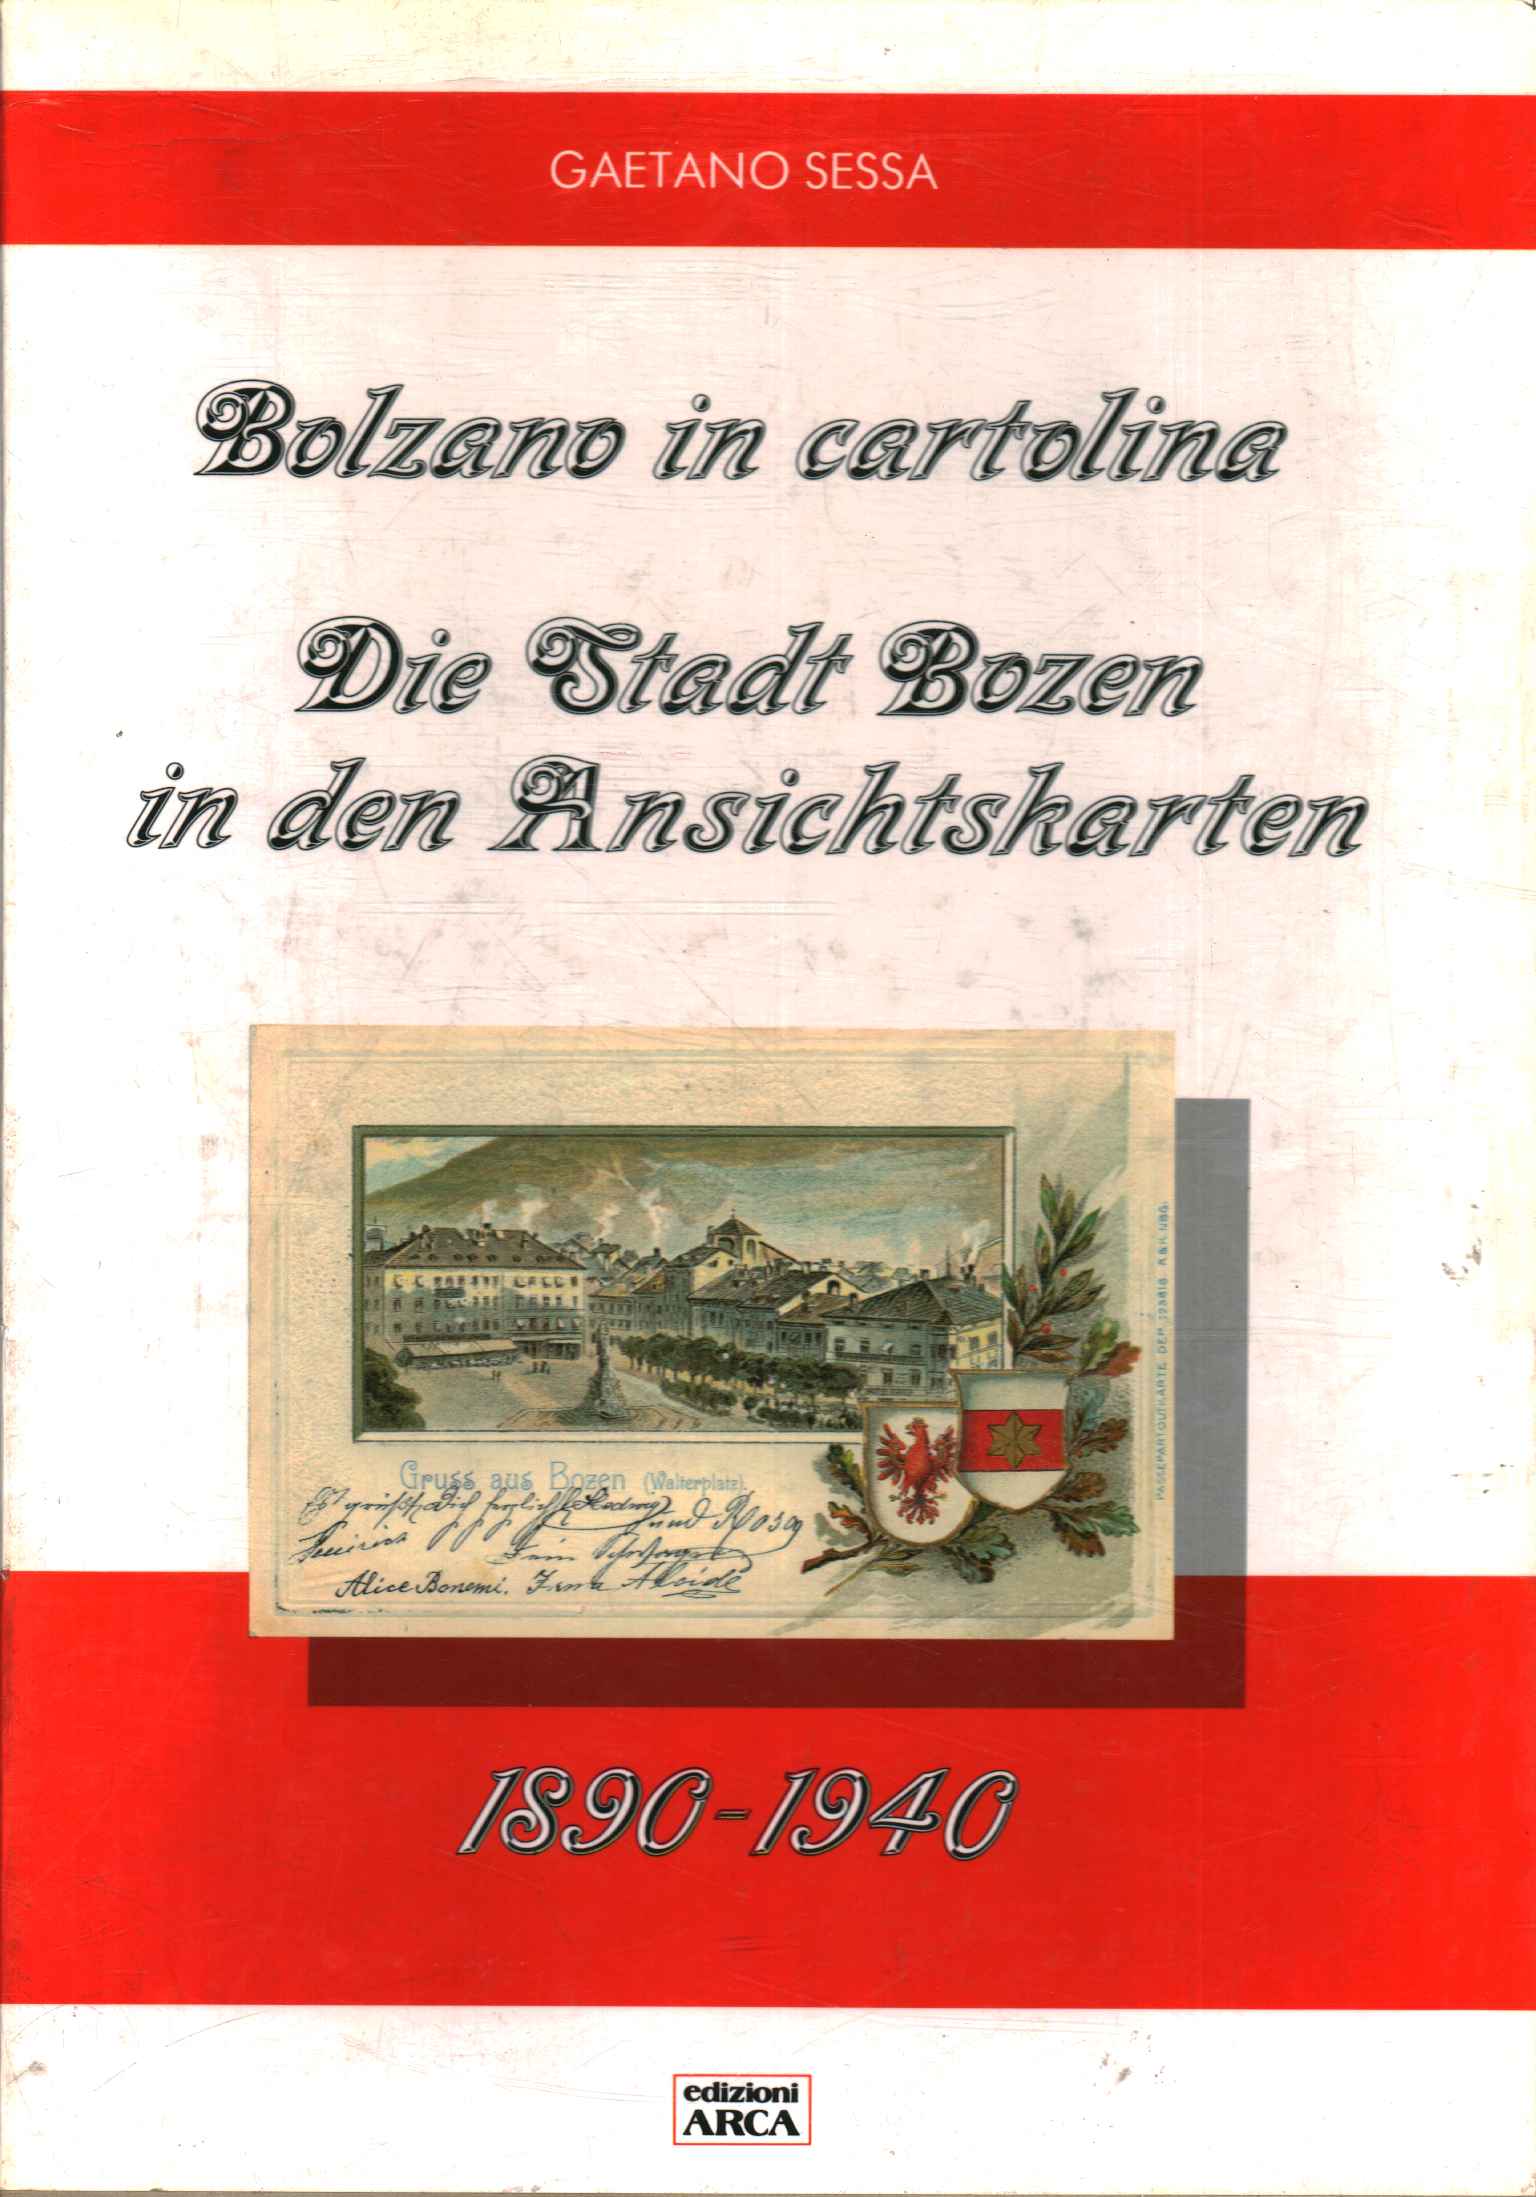 Bolzano sur une carte postale. La ville de Bozen